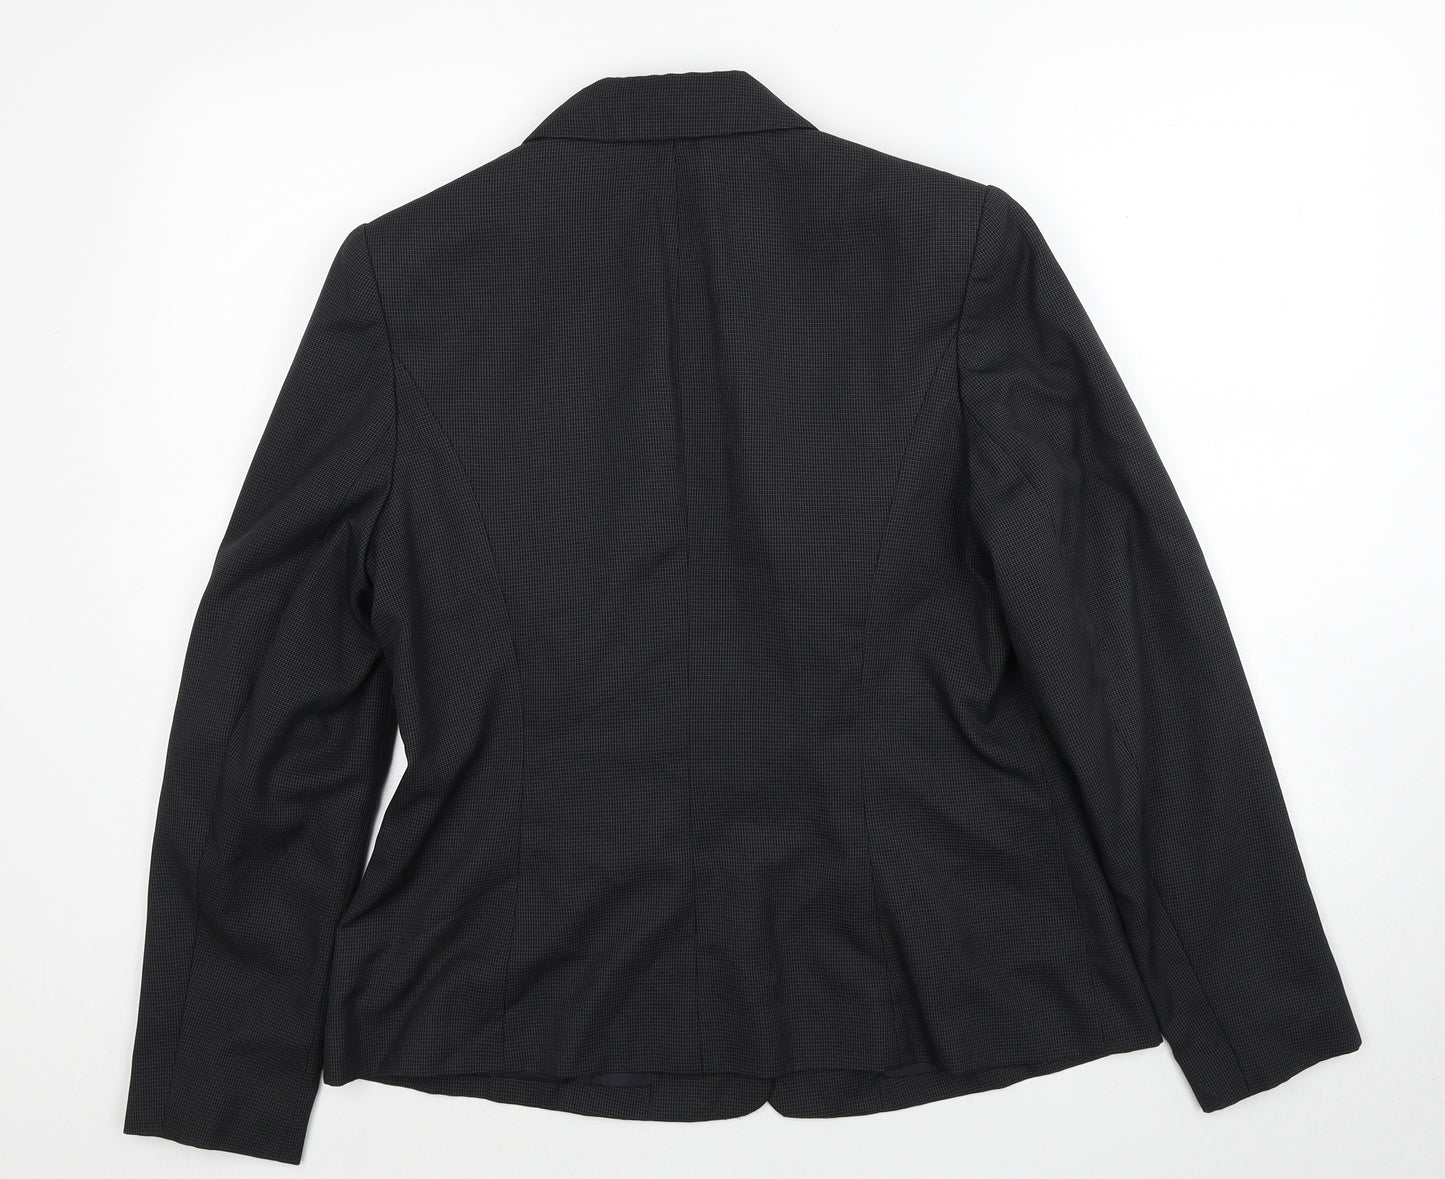 Papaya Womens Grey Polyester Jacket Suit Jacket Size 16